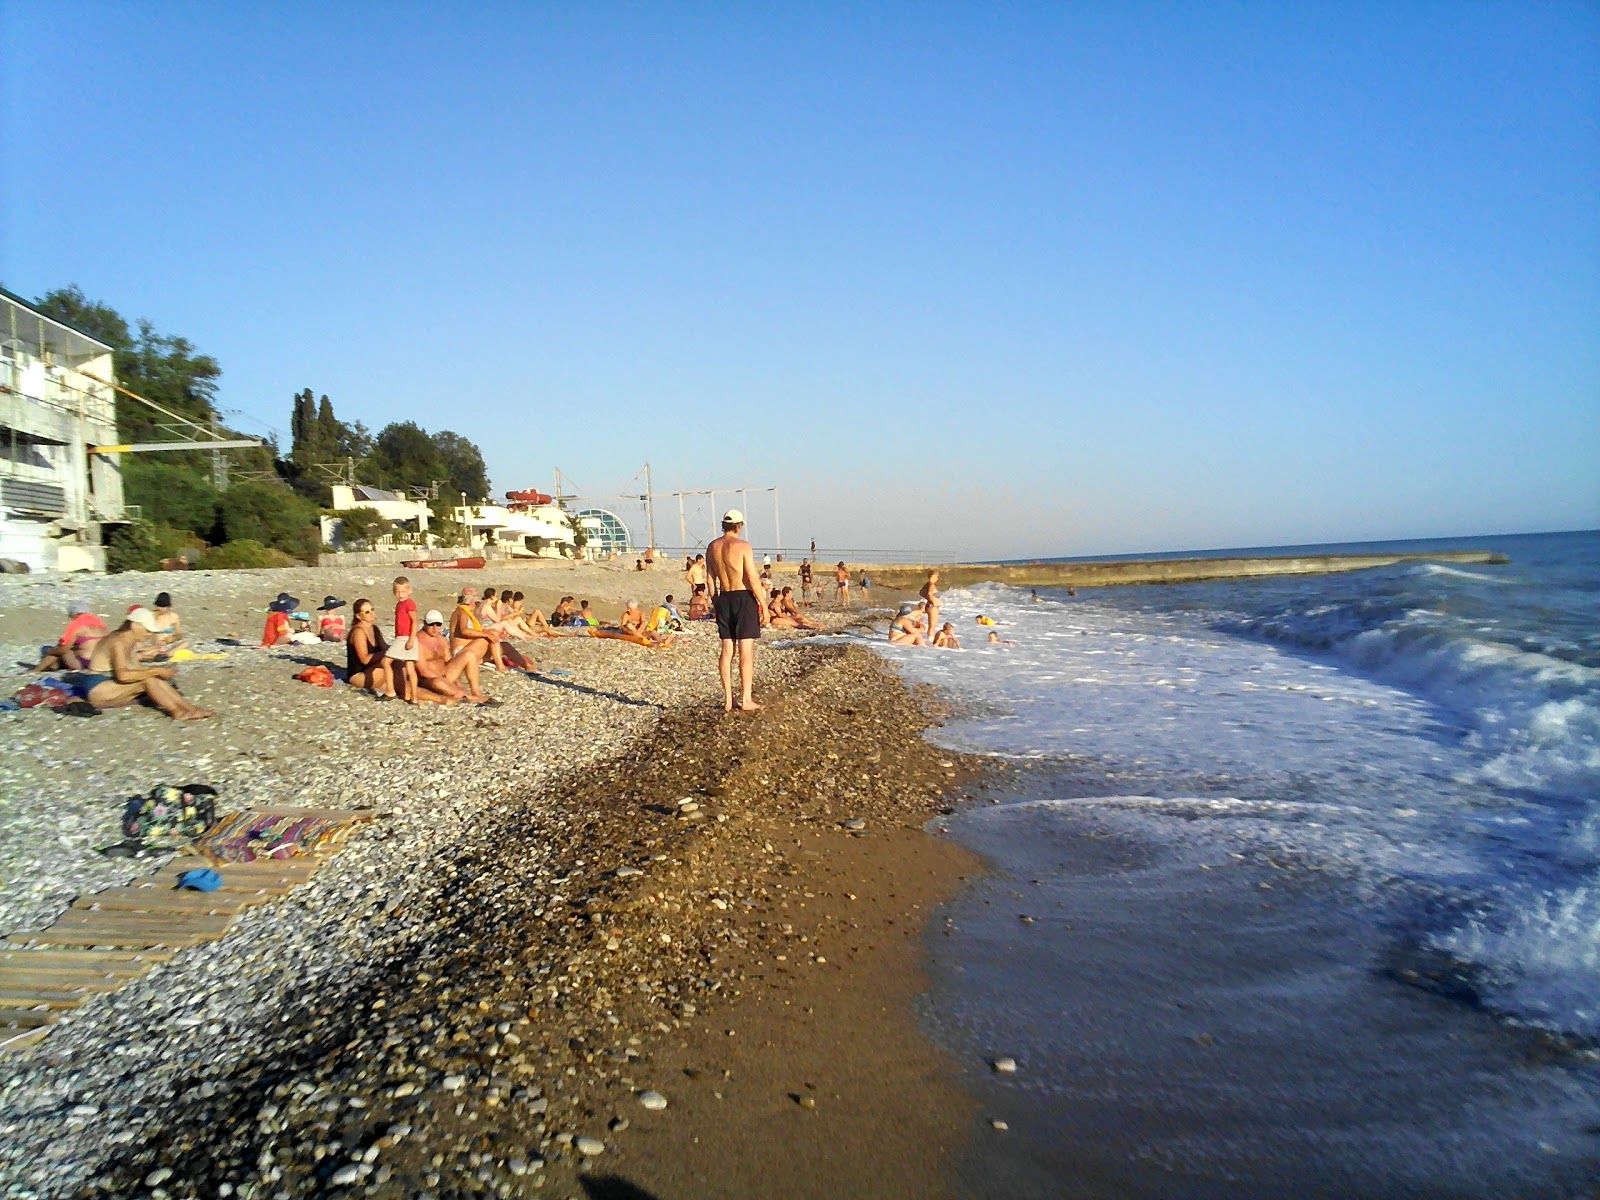 Zdjęcie Smena beach z powierzchnią szary kamyk